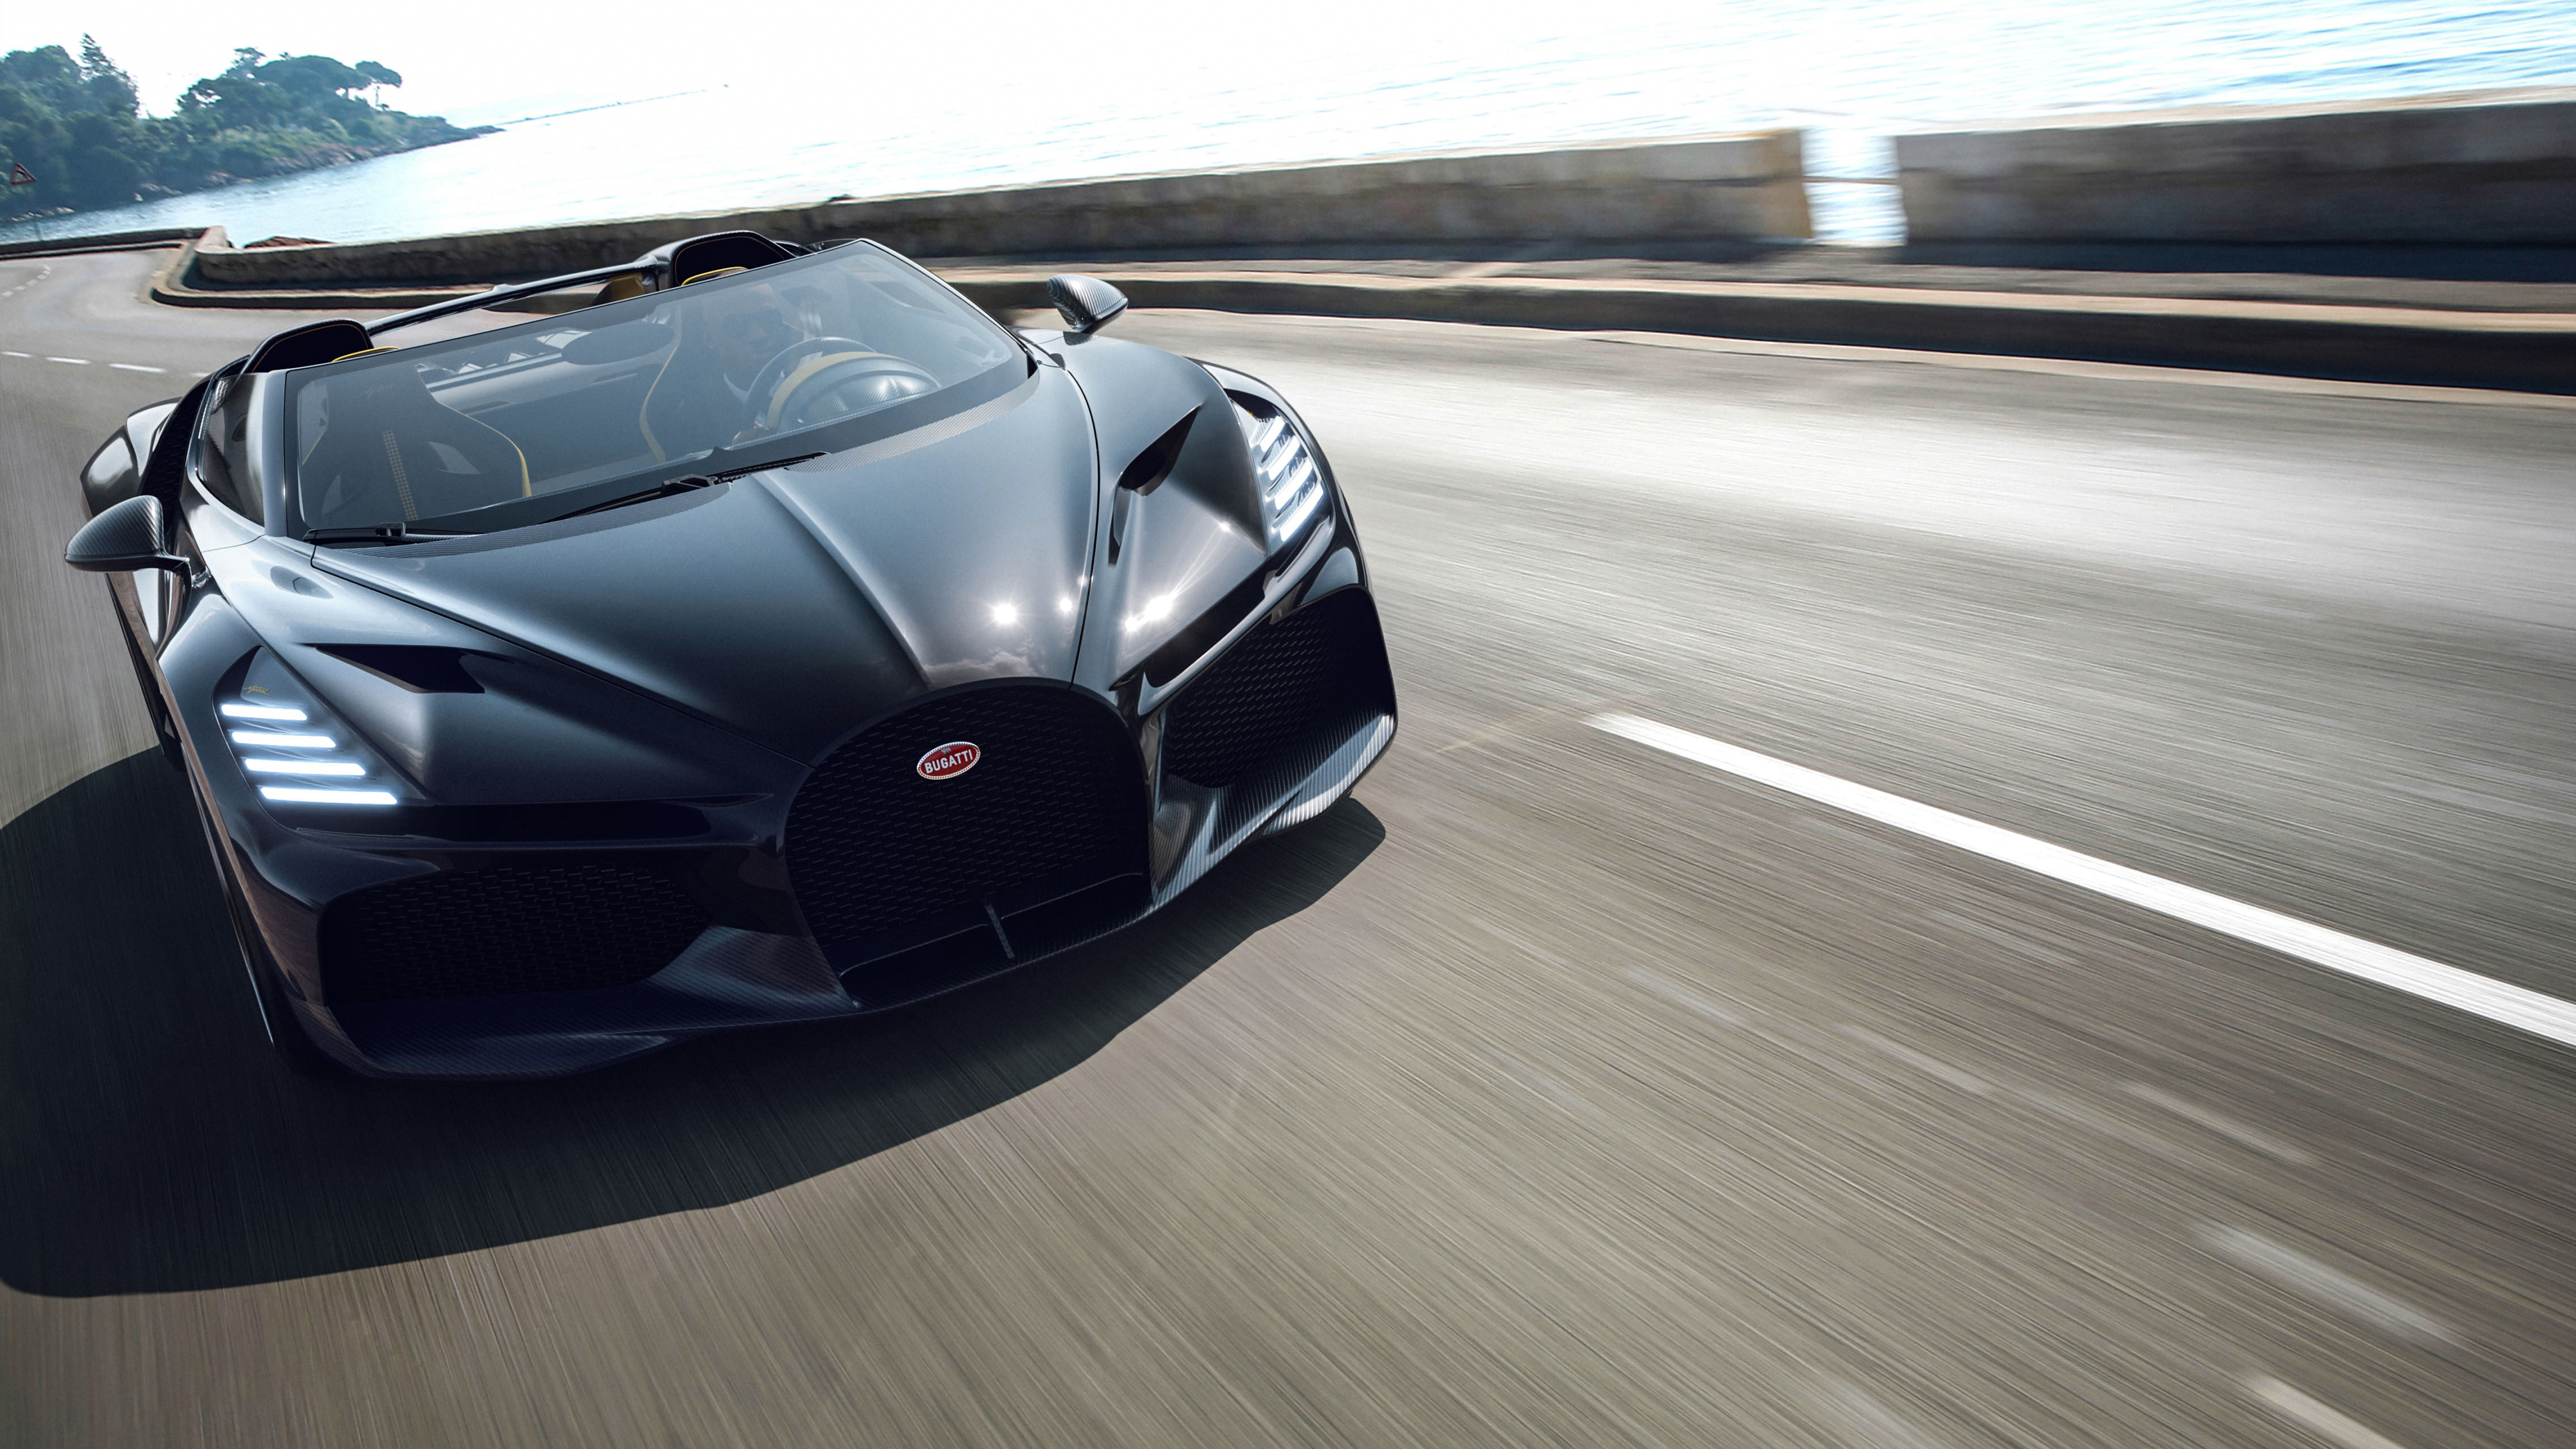 Chiêm ngưỡng Bugatti W16 Mistral - một biểu tượng của tốc độ và sự sang trọng. Được thiết kế bởi những nghệ sĩ đẳng cấp nhất, siêu xe này sẽ khiến bạn say đắm với các đường cong cực kỳ cuốn hút. Những hình ảnh đầy màu sắc này sẽ đưa bạn vào quy trình sản xuất xe đua và giữ cho bạn phấn khích từ đầu đến cuối cùng.